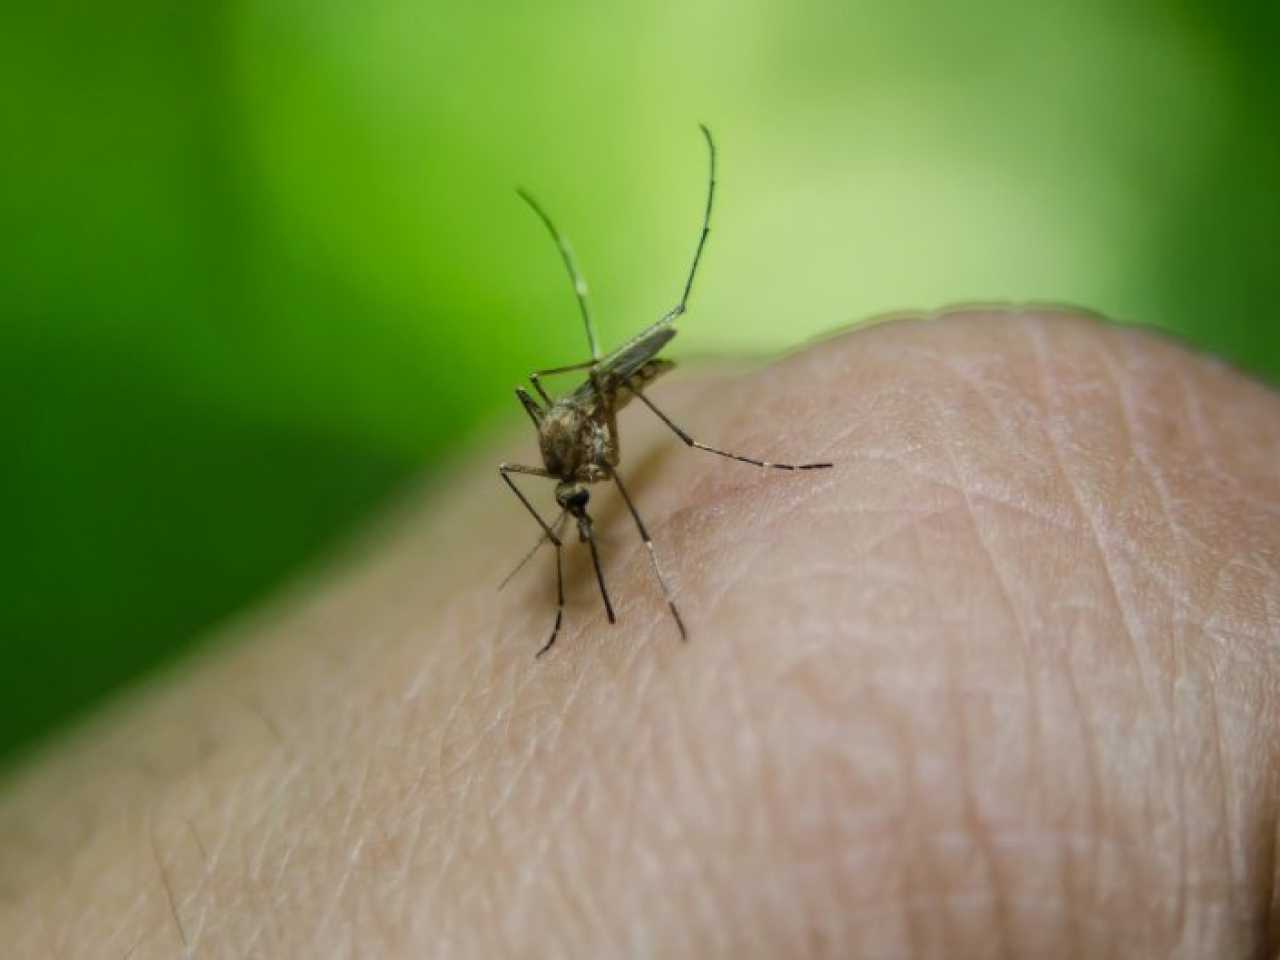 Le zanzare ti danno fastidio?  Questo prodotto aiuta davvero, altri prodotti sono spesso uno spreco di denaro